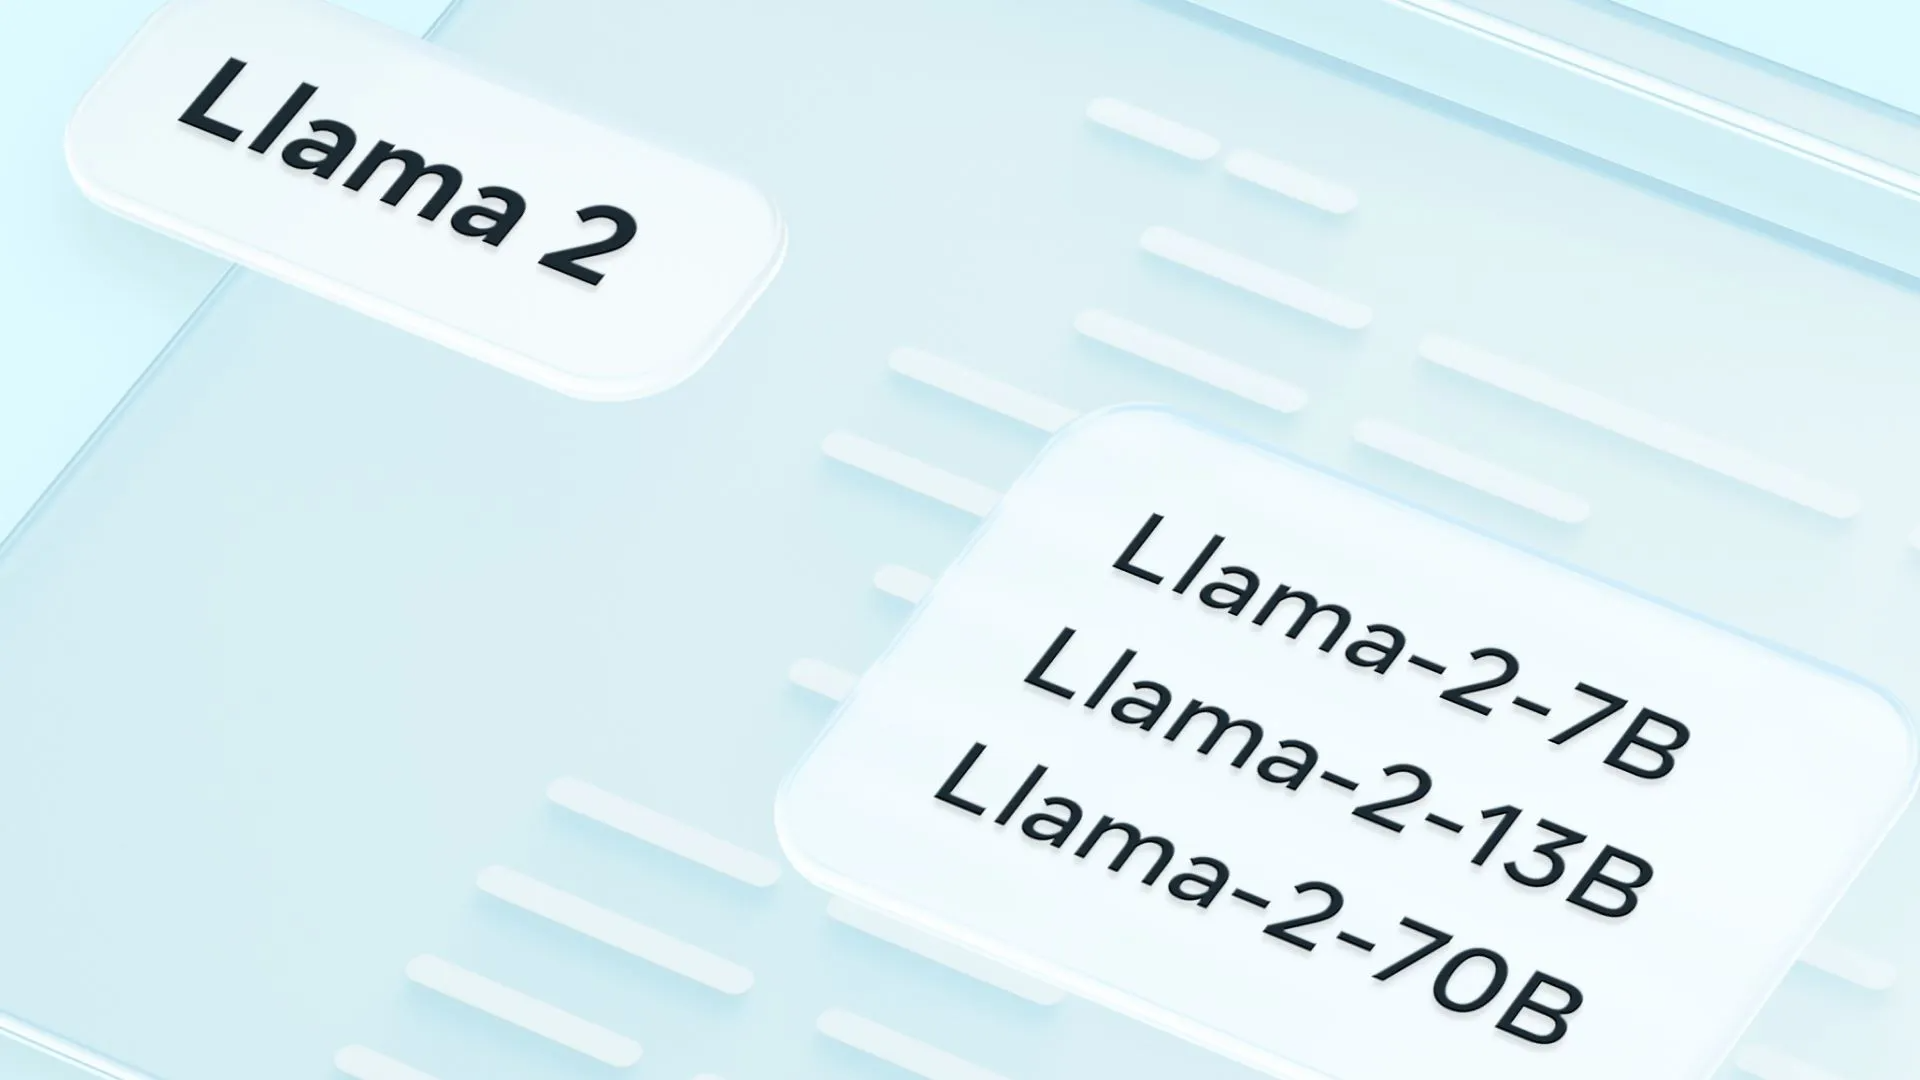 Llama 2 header showing Llama 2 7B, Llama 2 13B, and Llama 2 70B